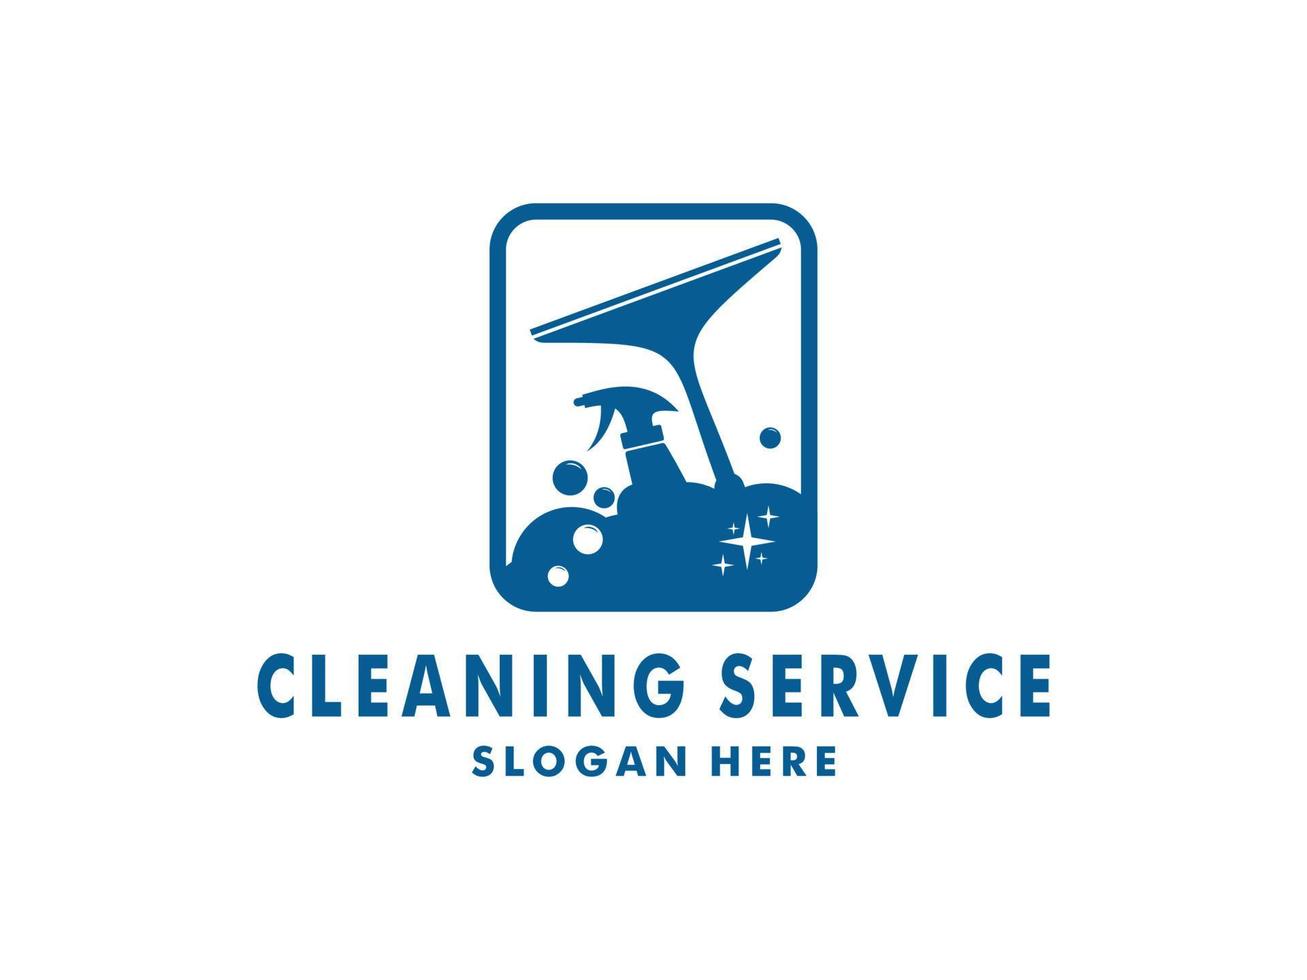 pulizia servizio logo vettore design ispirazione